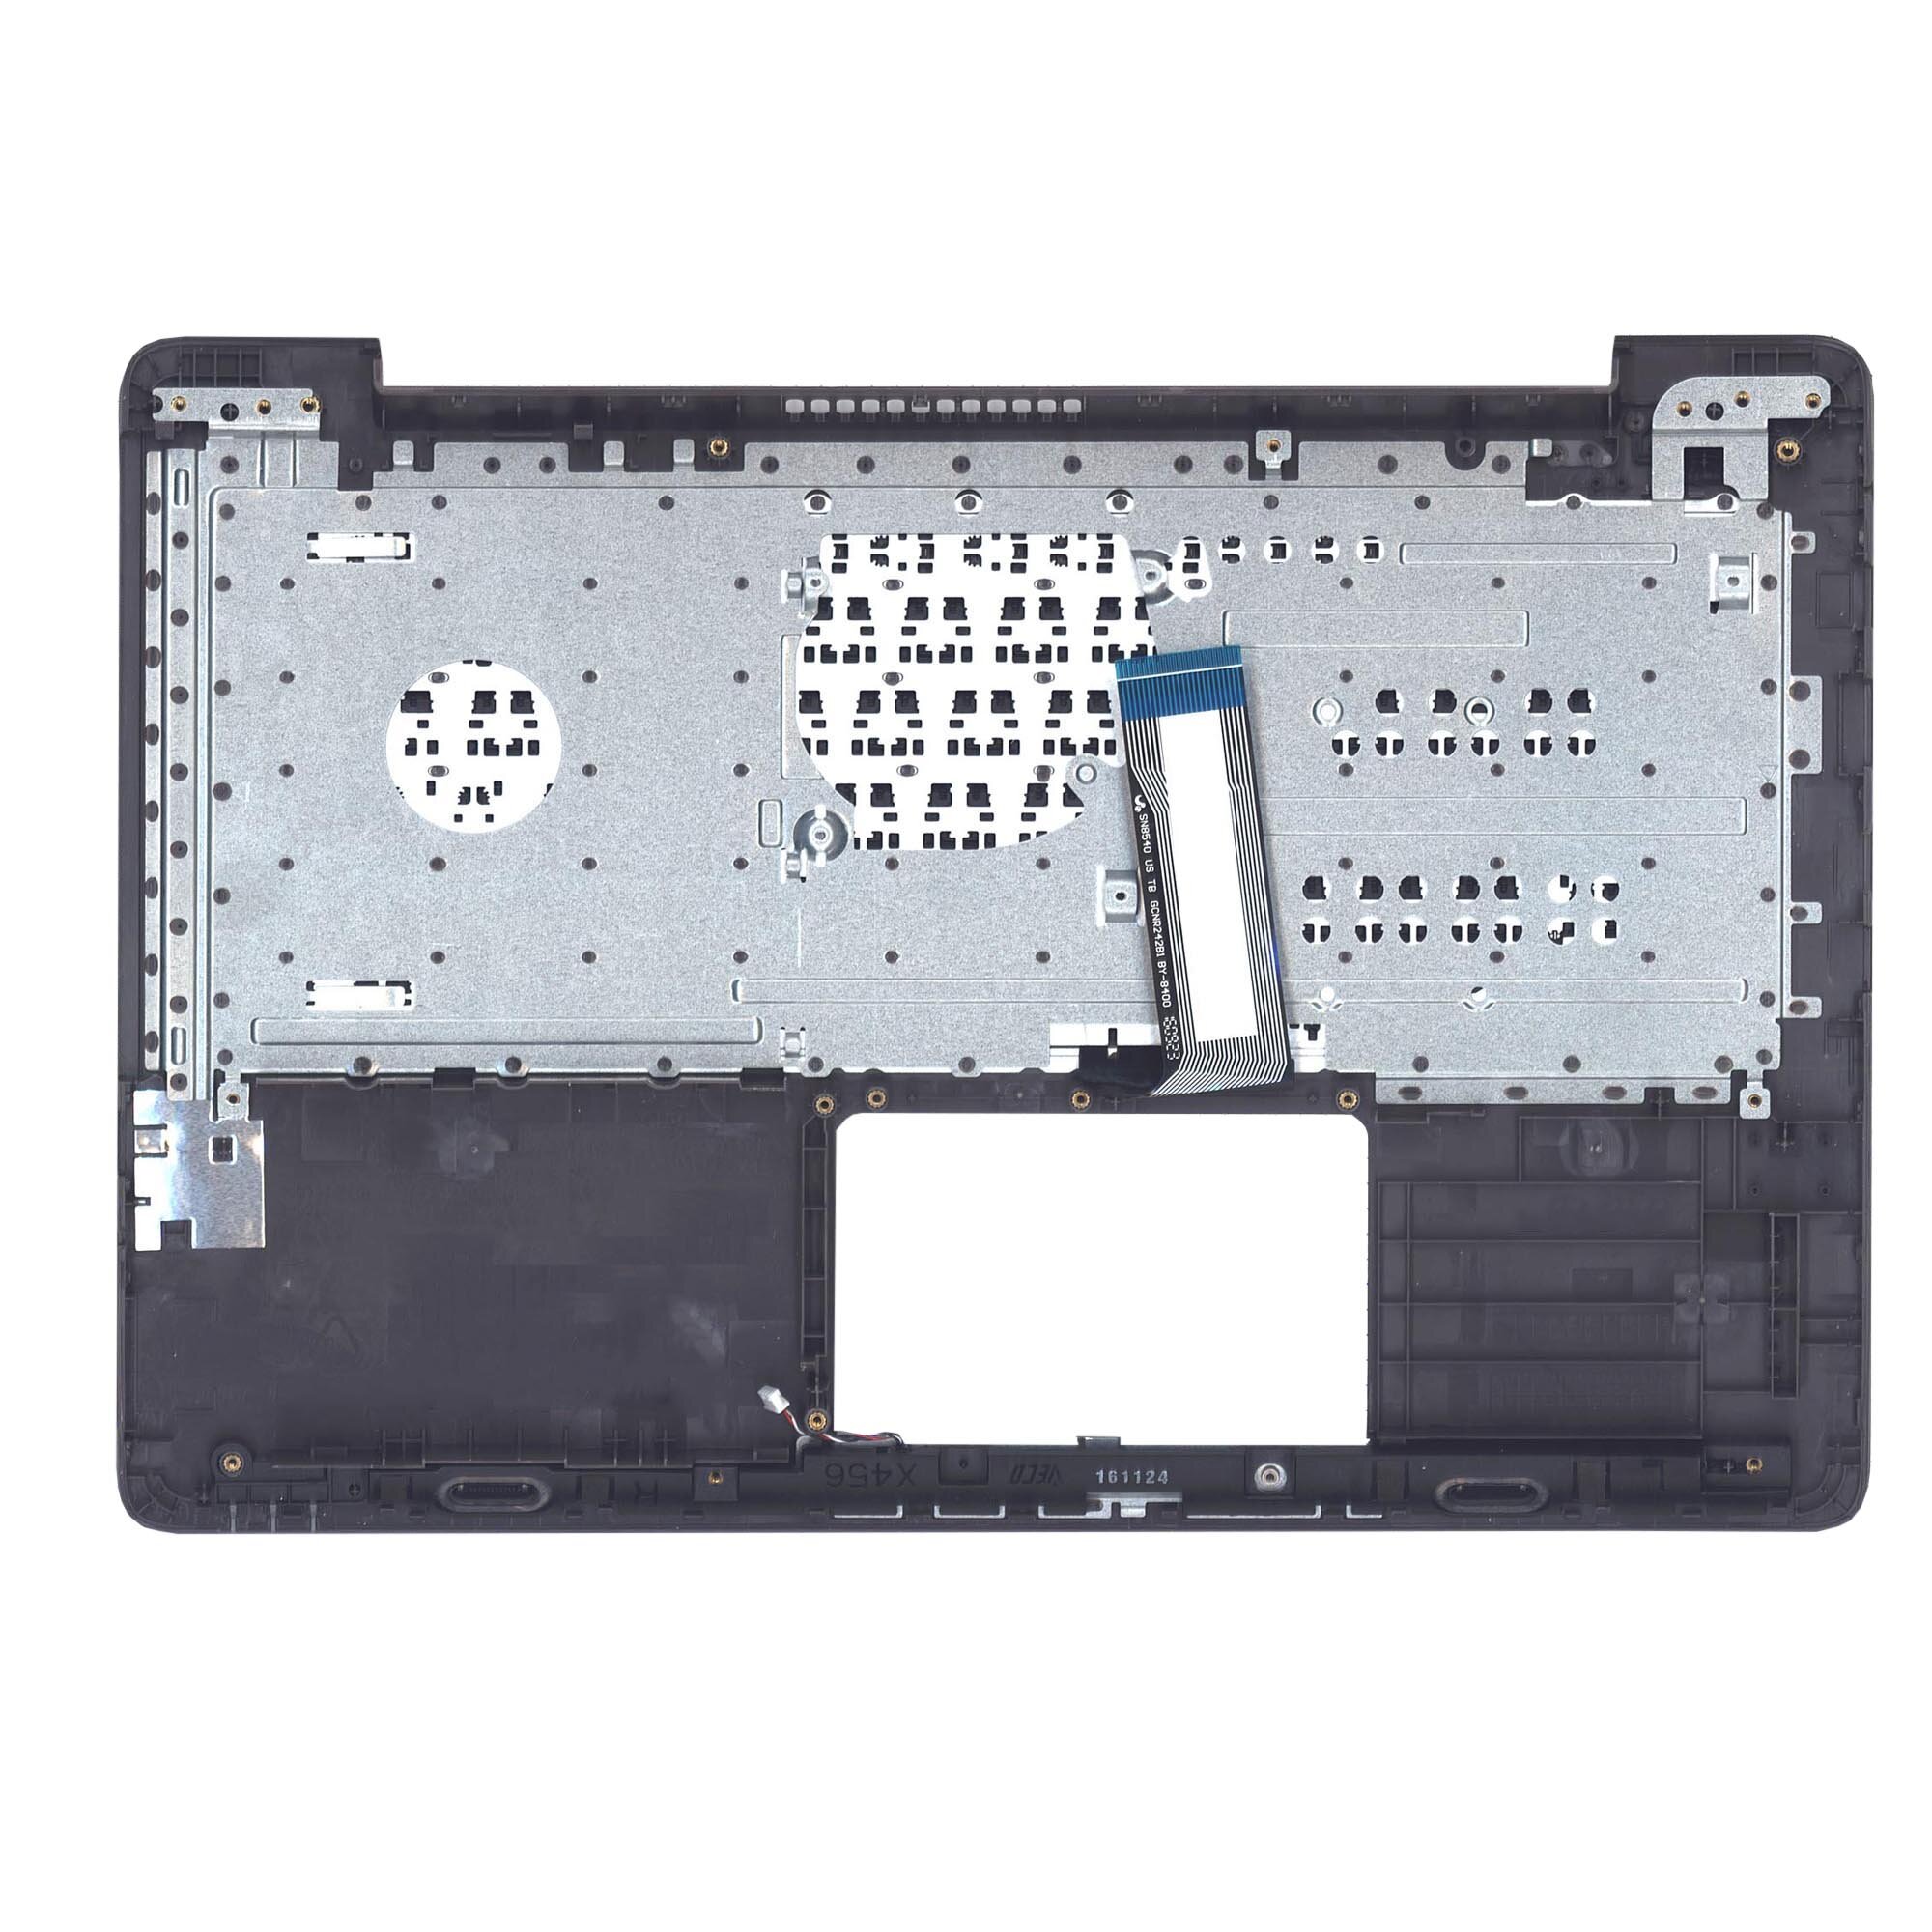 Клавиатура (топ-панель) для ноутбука Asus X456 черная с бронзовым топкейсом